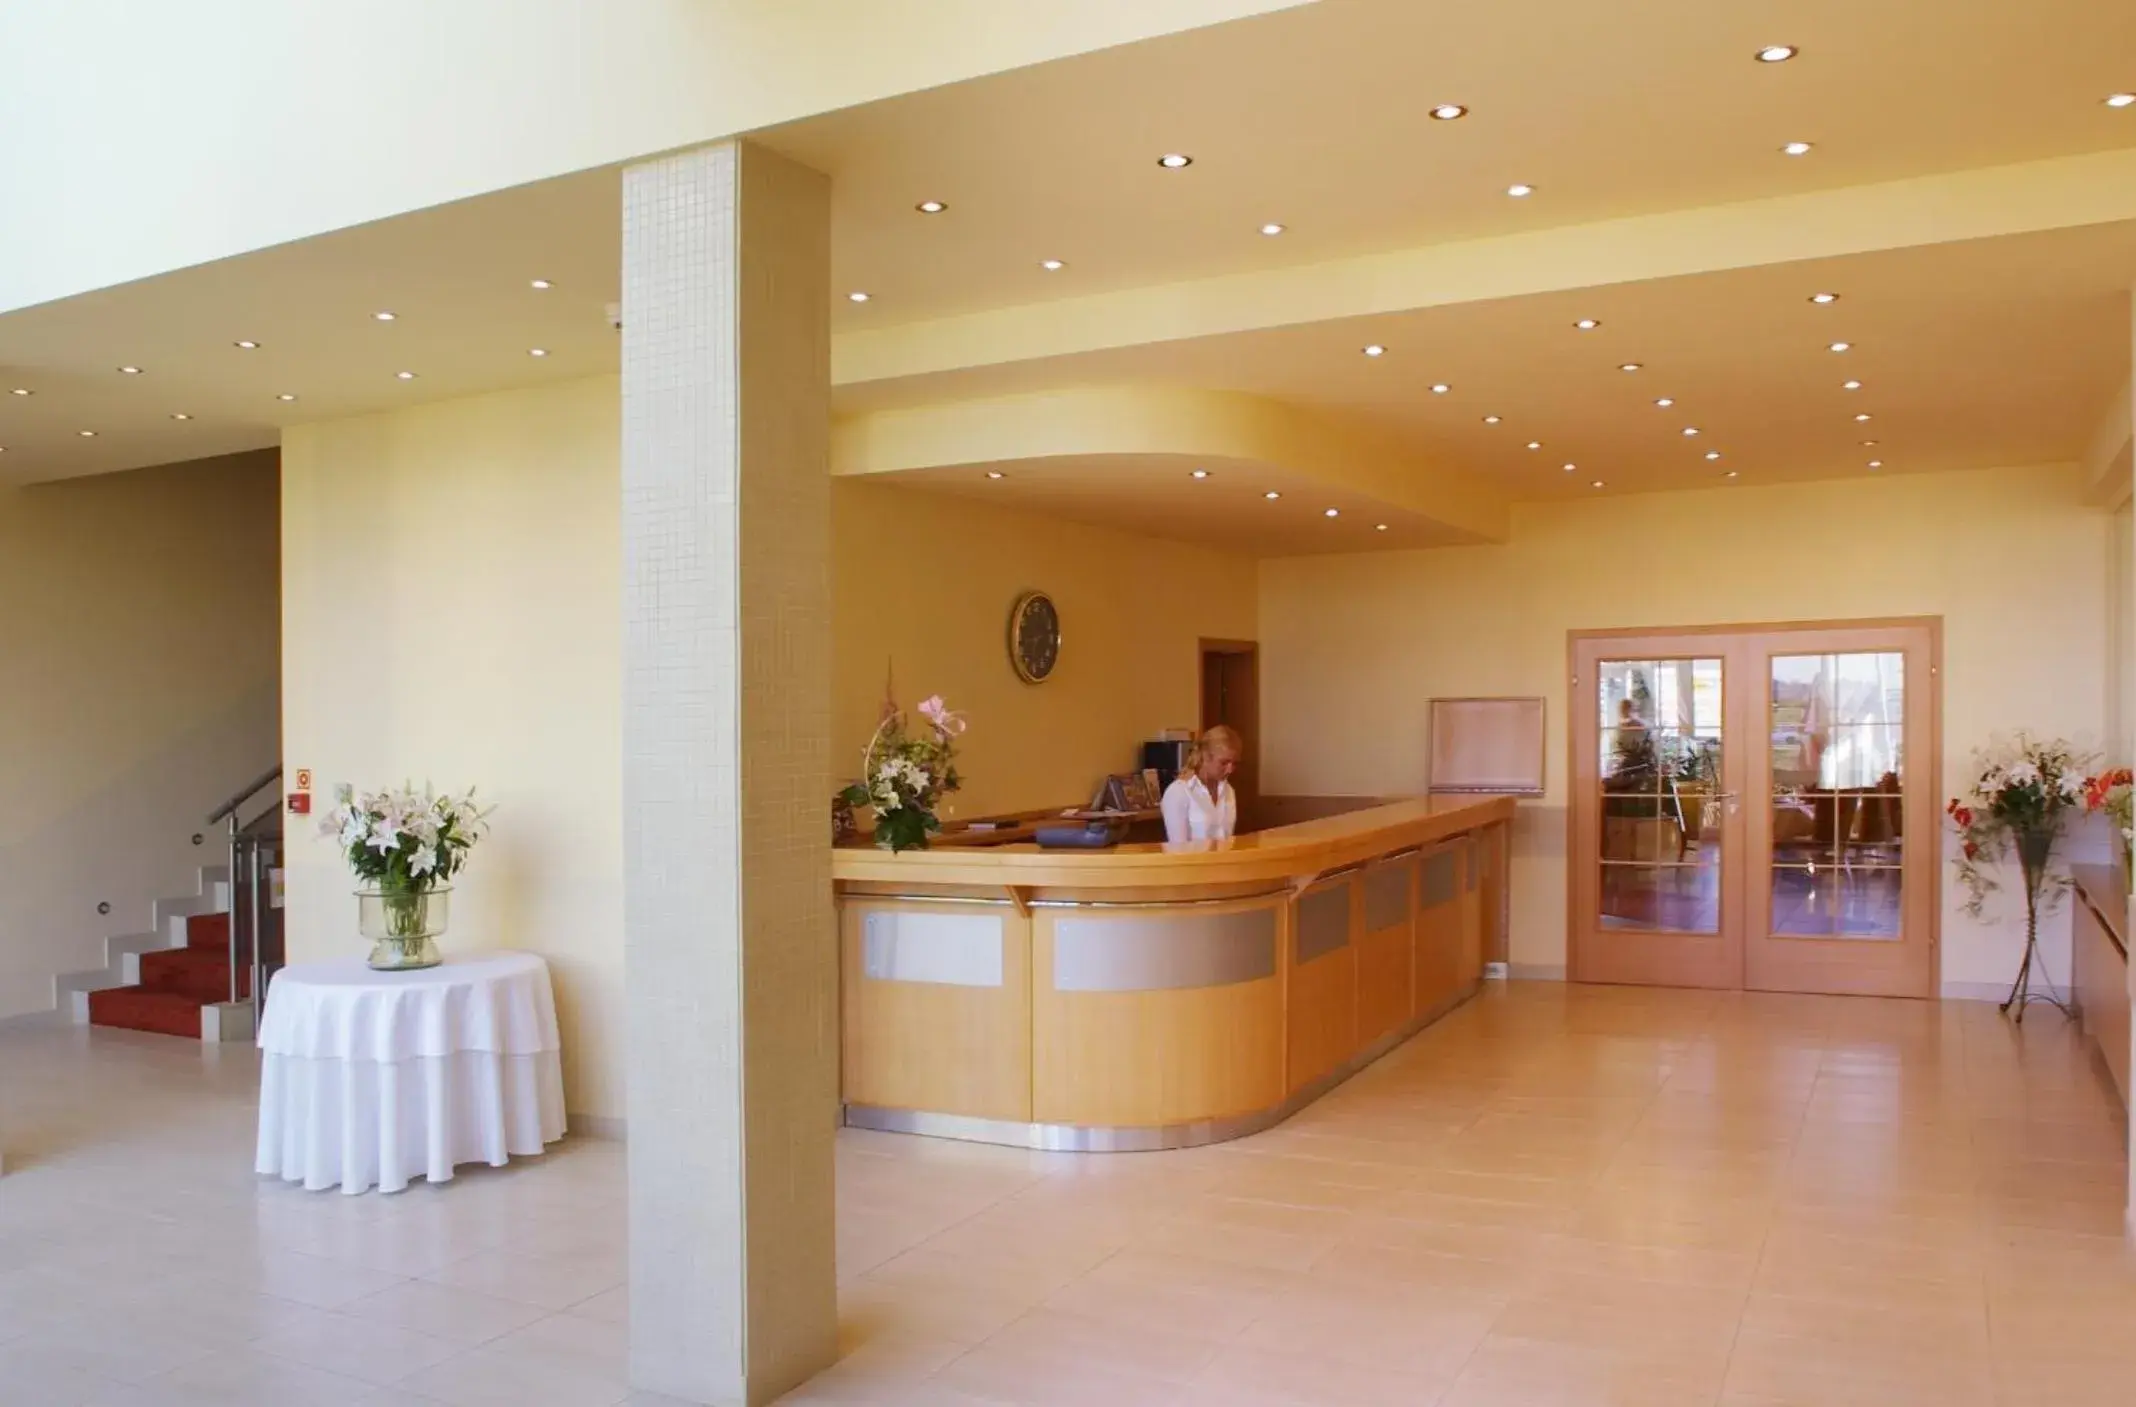 Lobby or reception, Lobby/Reception in Hotel Bielany